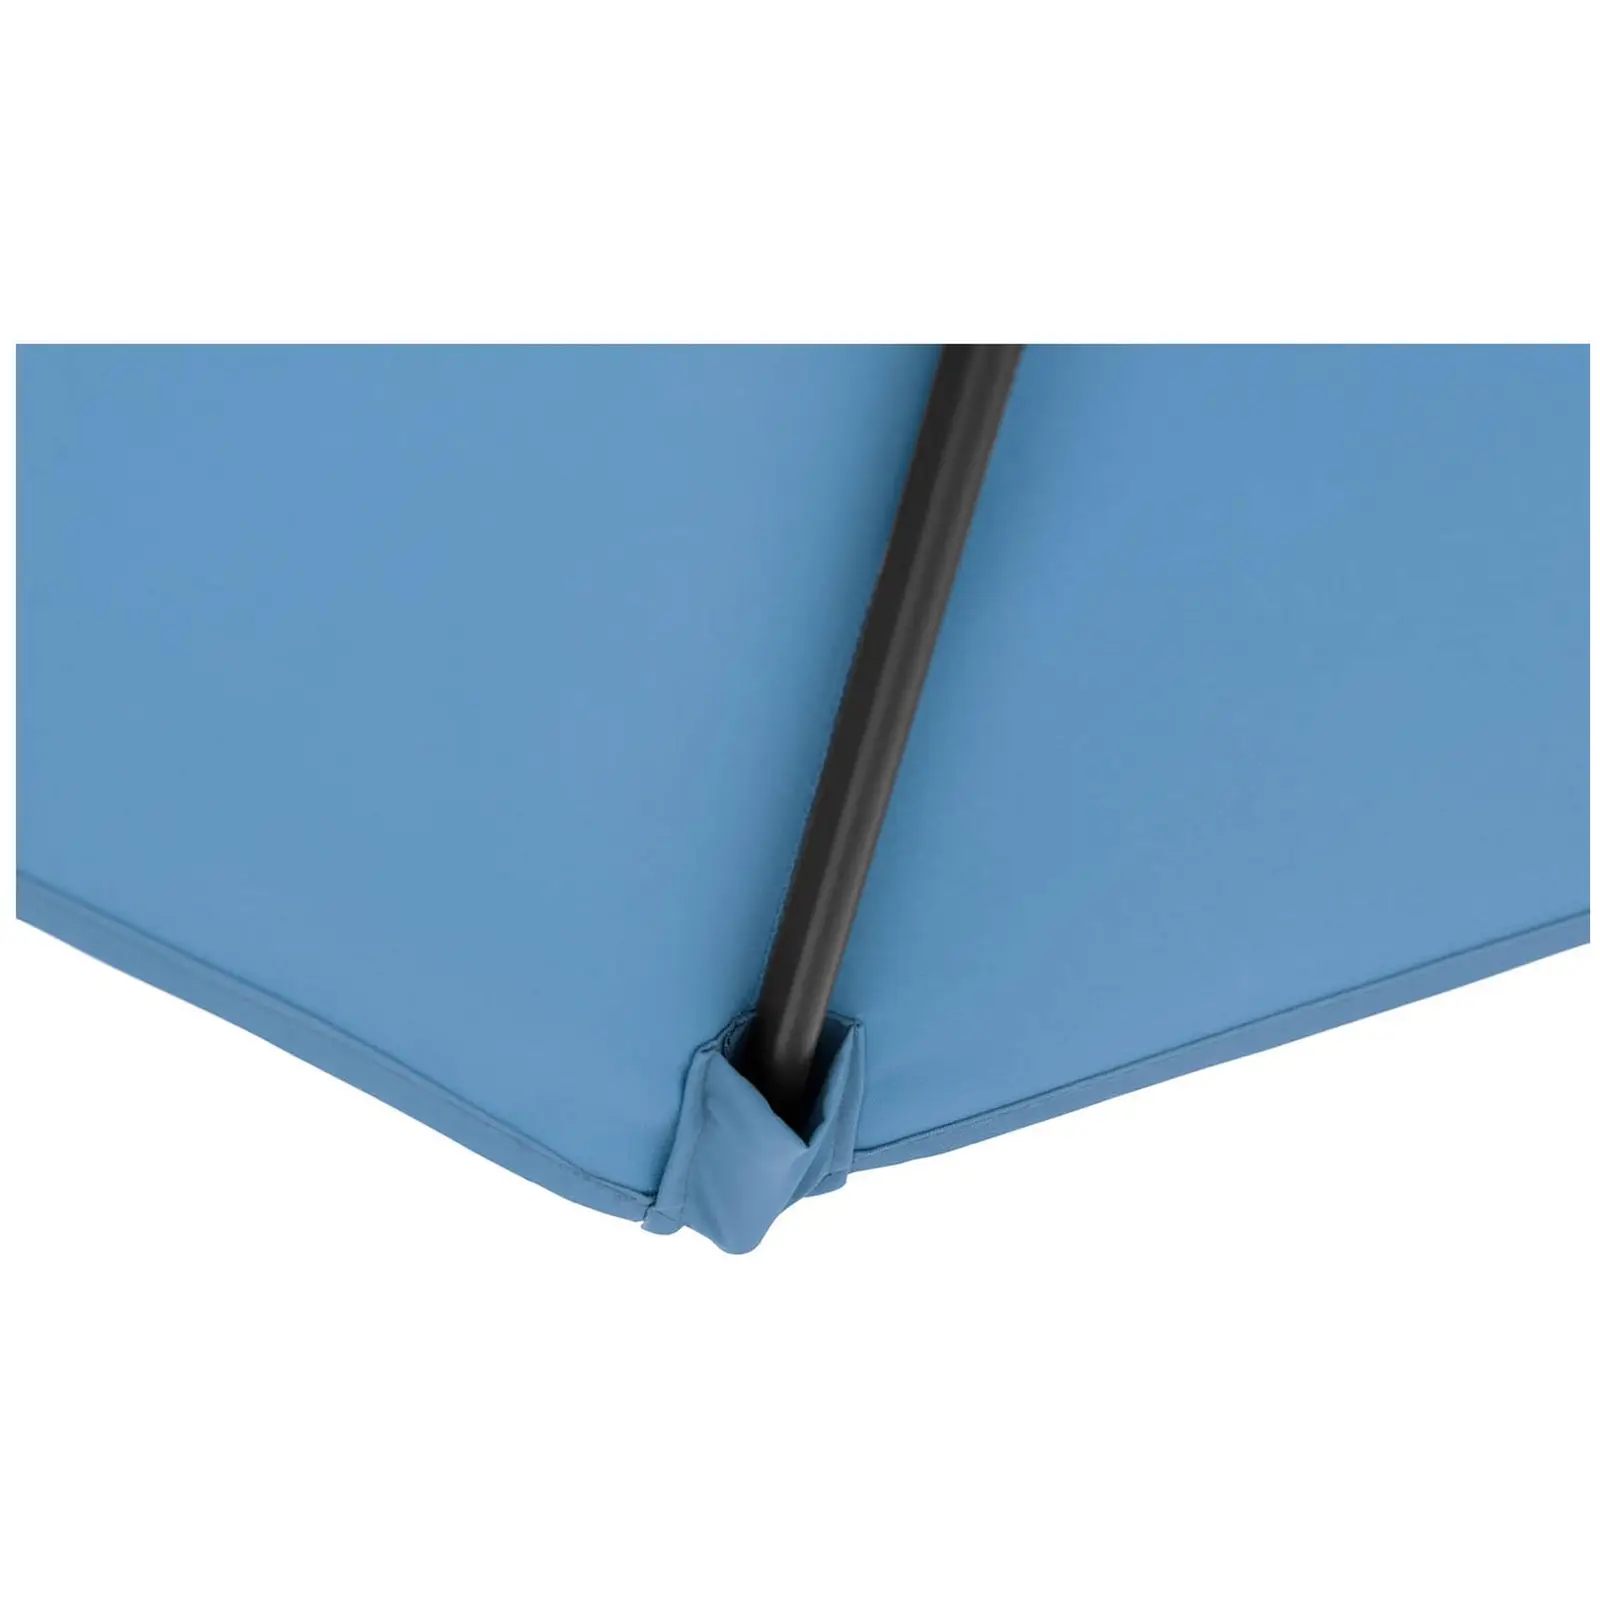 Sonnenschirm groß - blau - rechteckig - 200 x 300 cm - 8